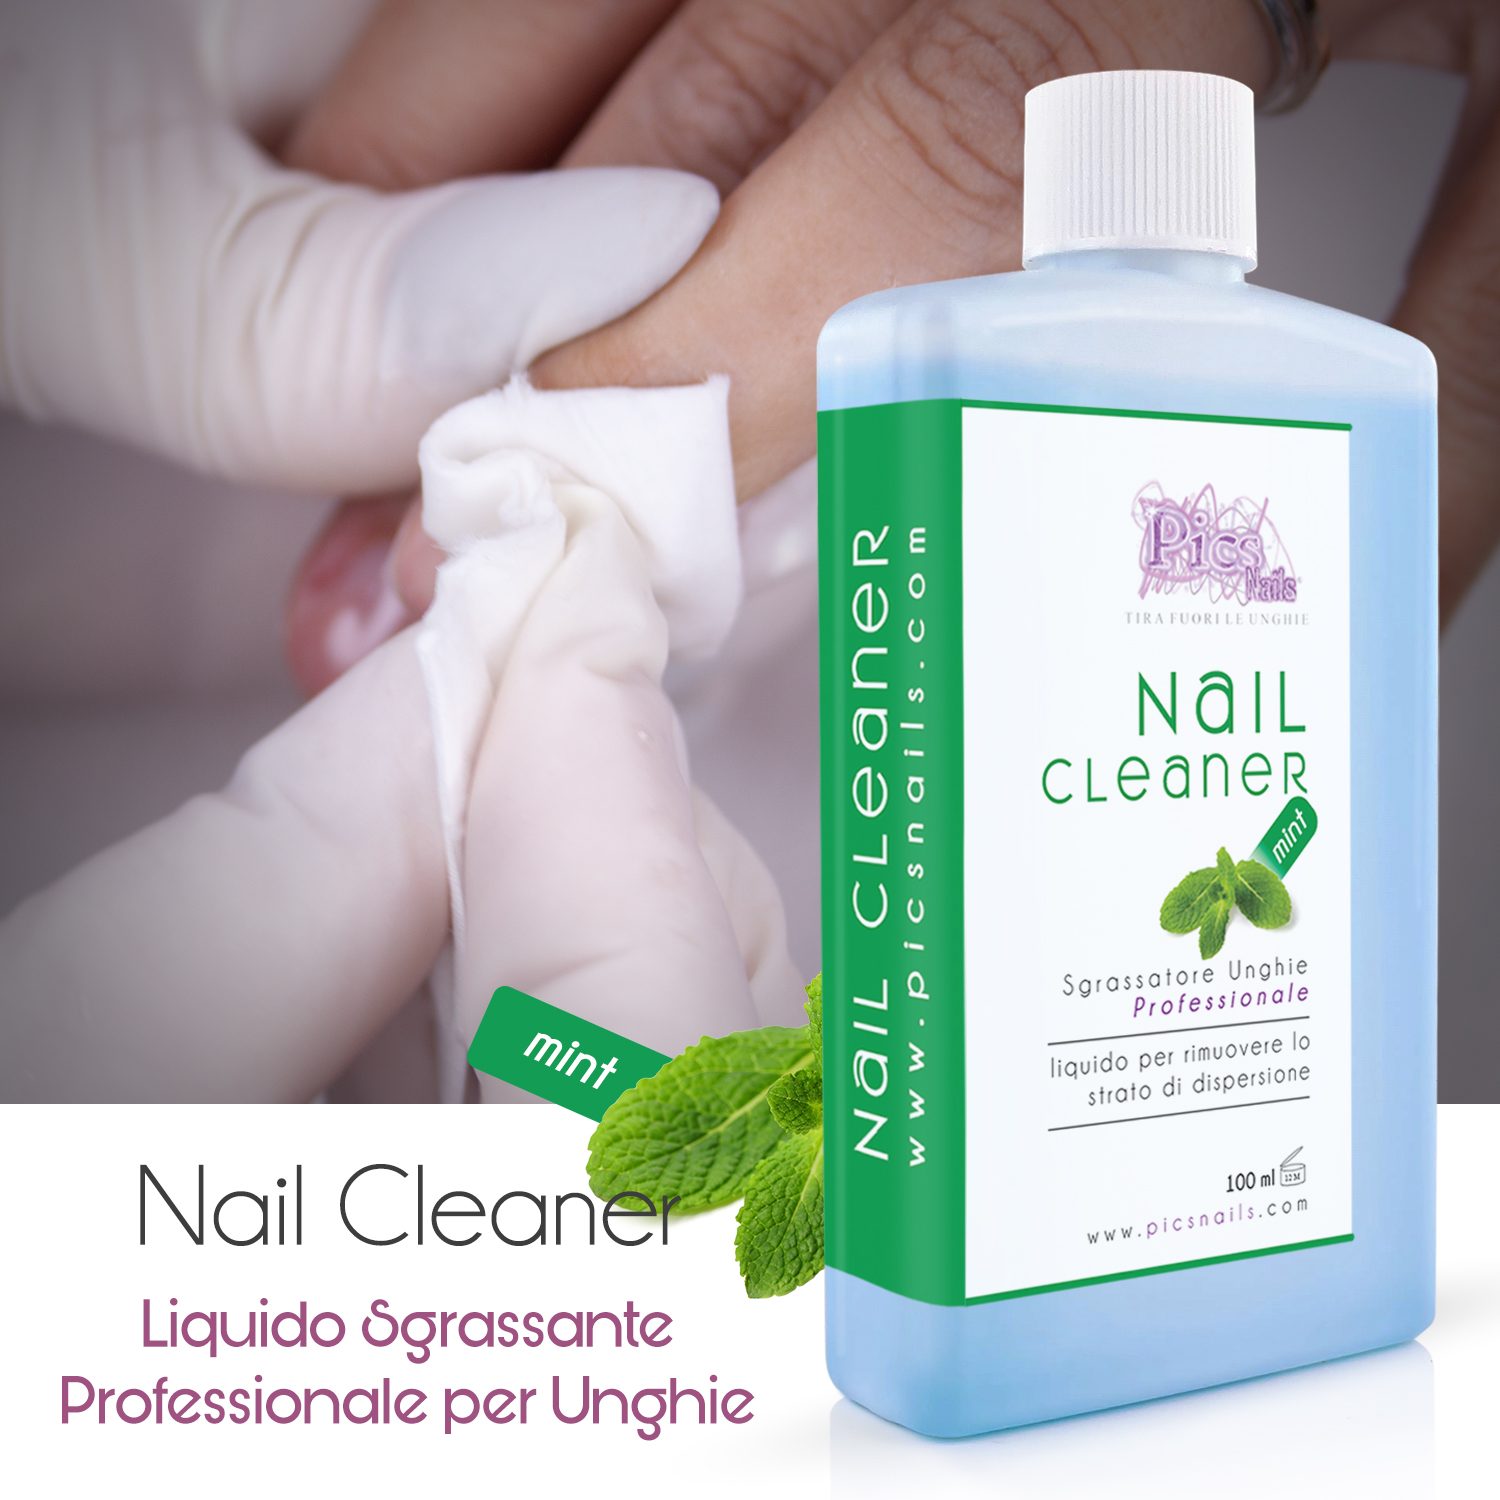 Nail Cleaner Menta 100 ml Ricostruzione Unghie e Semiper